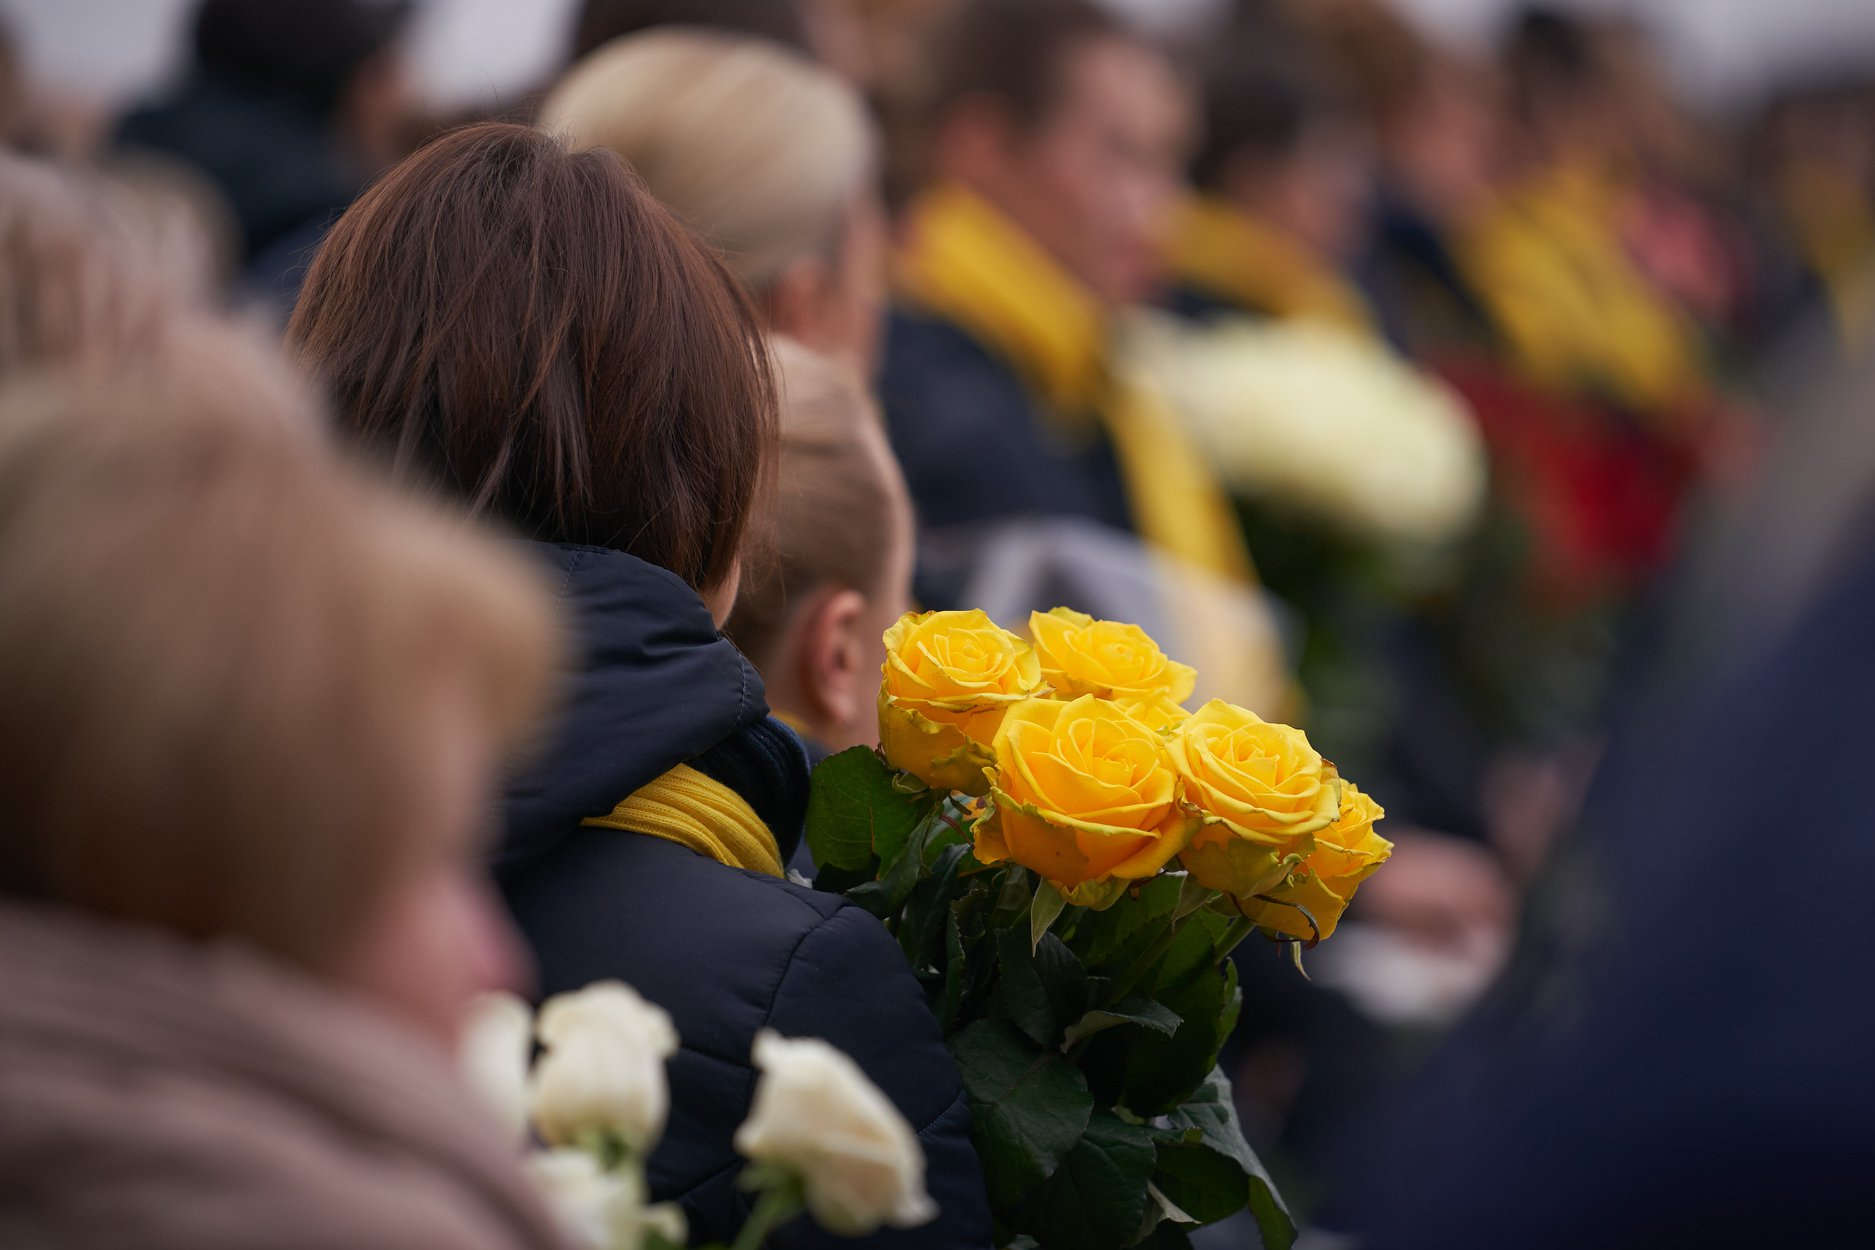 В Борисполе простились с погибшими в авиакатастрофе самолета МАУ над Ираном. ФОТО